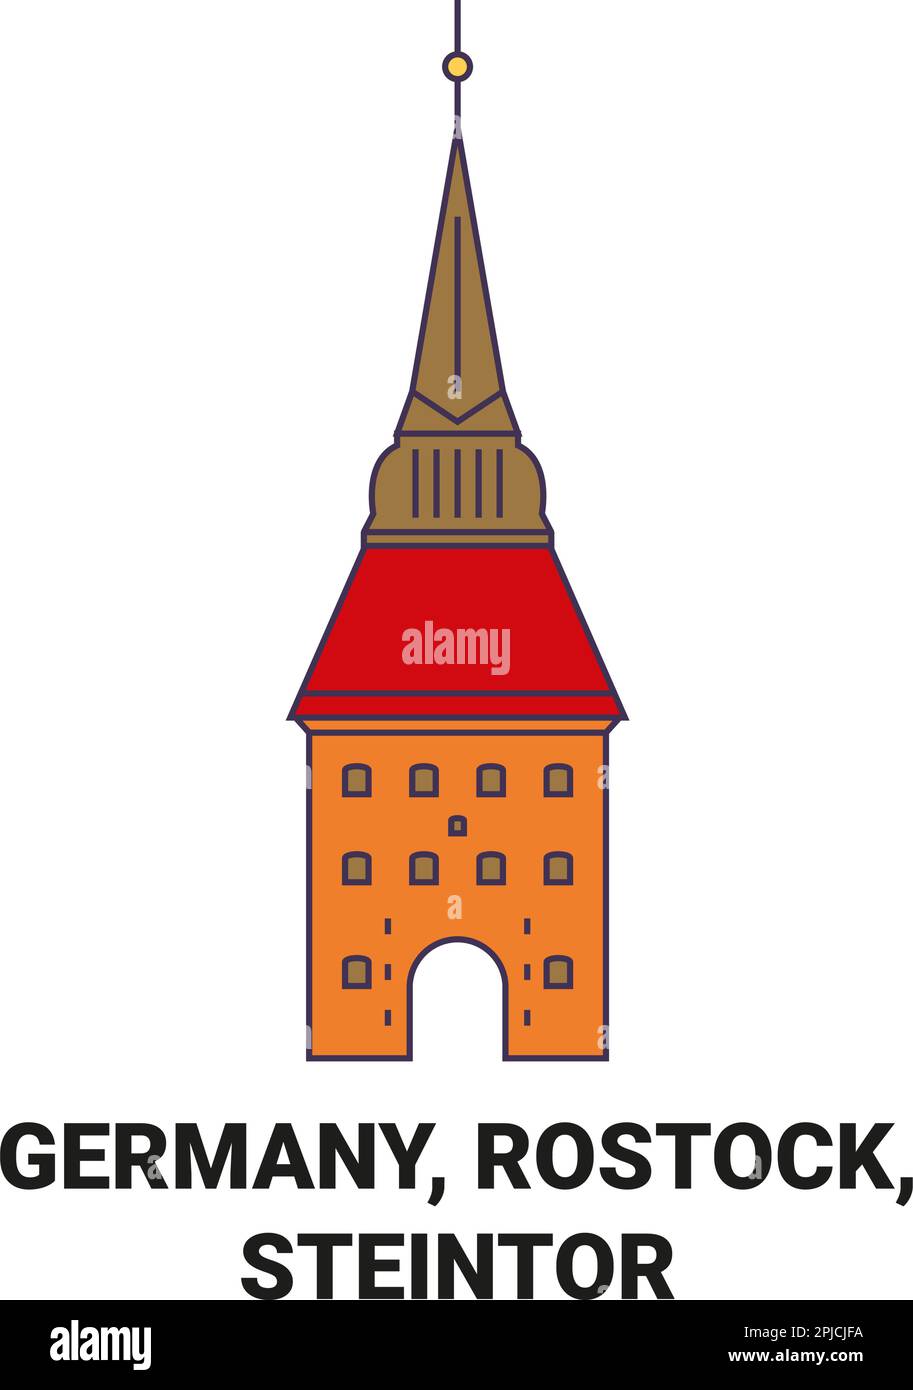 Deutschland, Rostock, Steintor Reise Landmark Vektordarstellung Stock Vektor